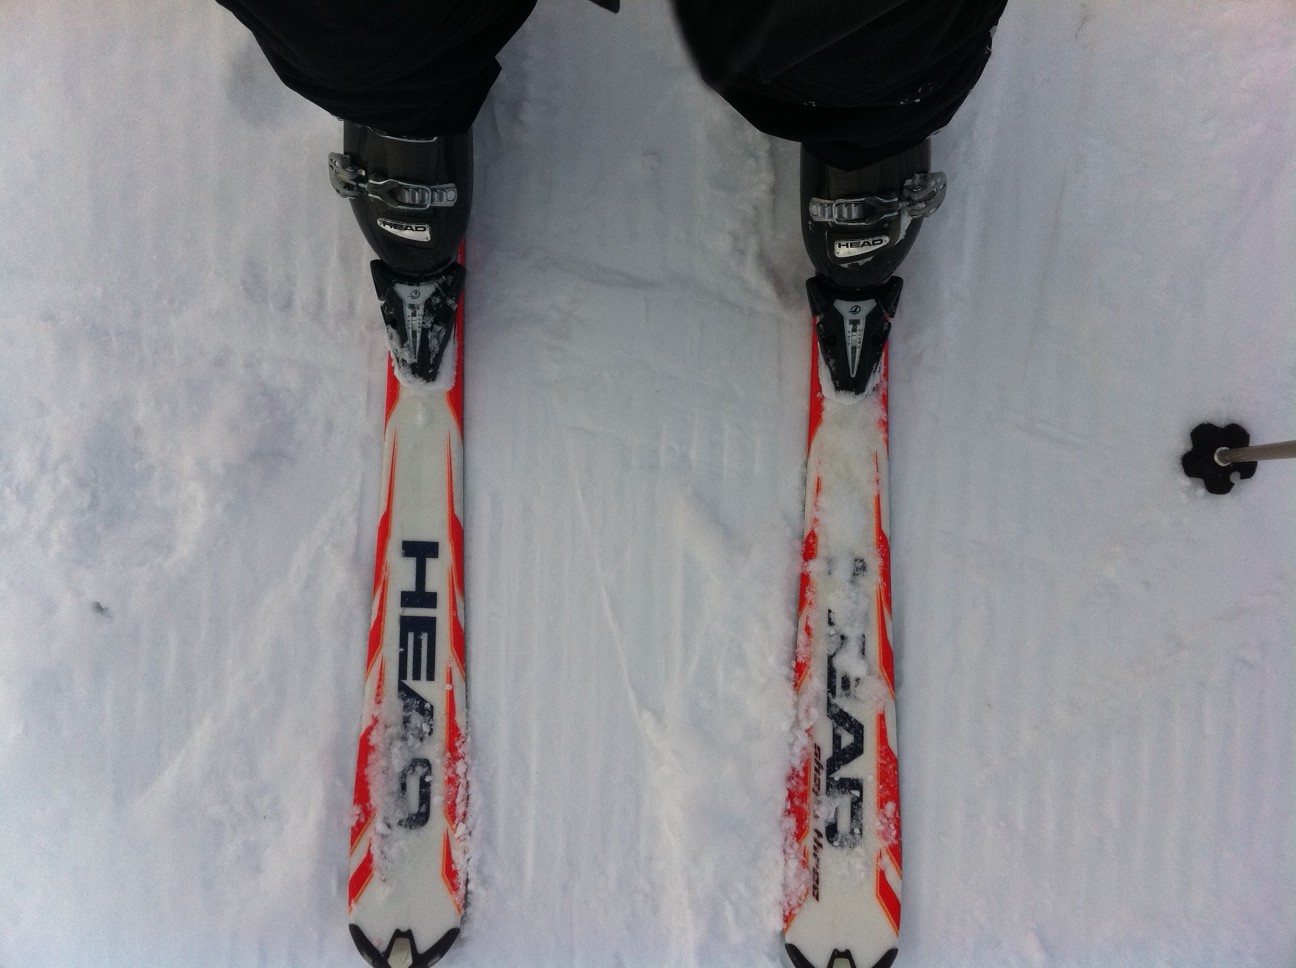 Beginner Skier